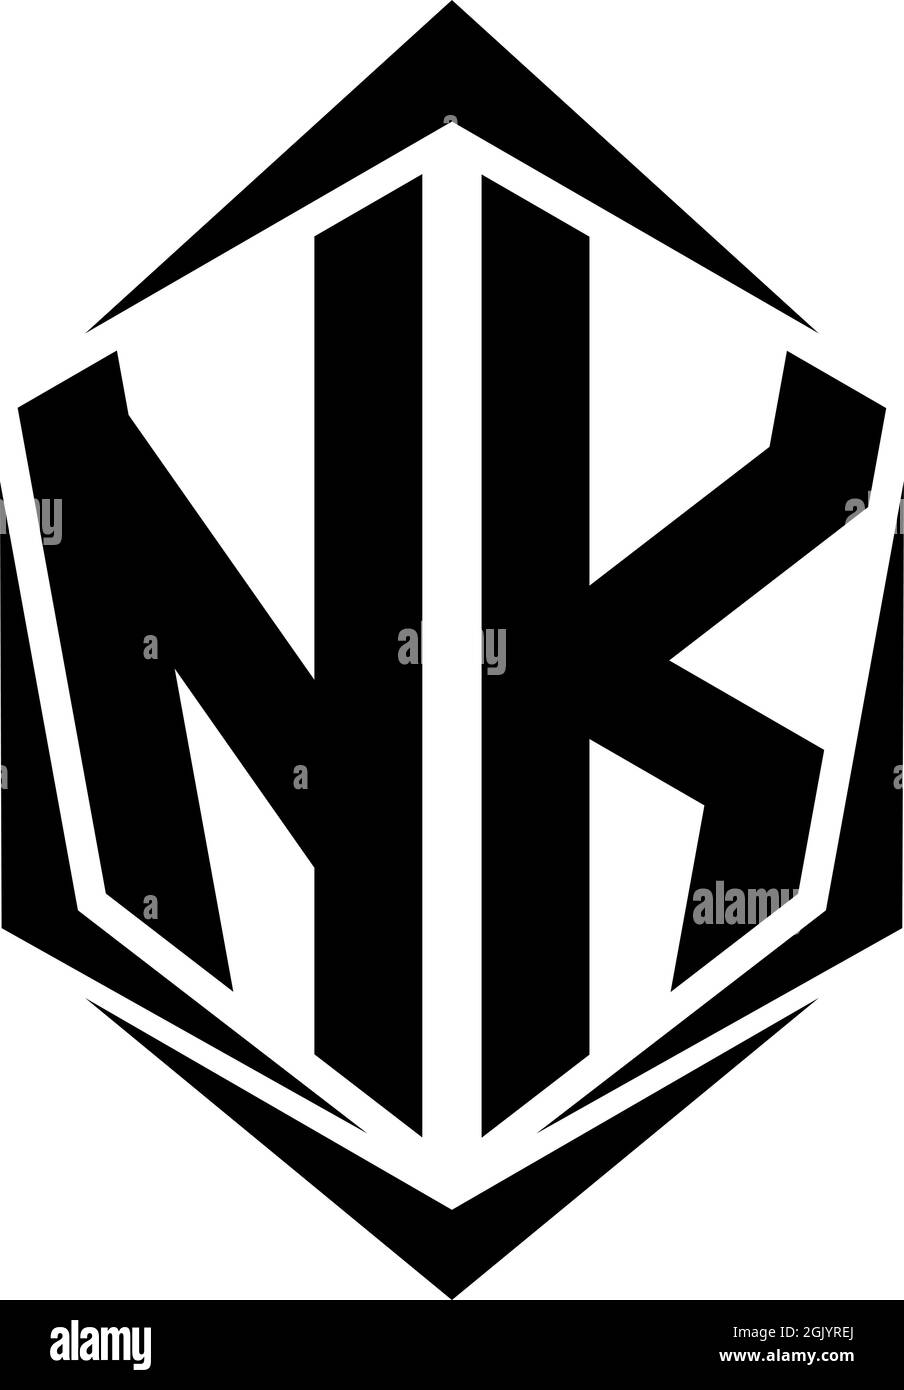 Nk Logo Bilder – Durchsuchen 4,510 Archivfotos, Vektorgrafiken und Videos